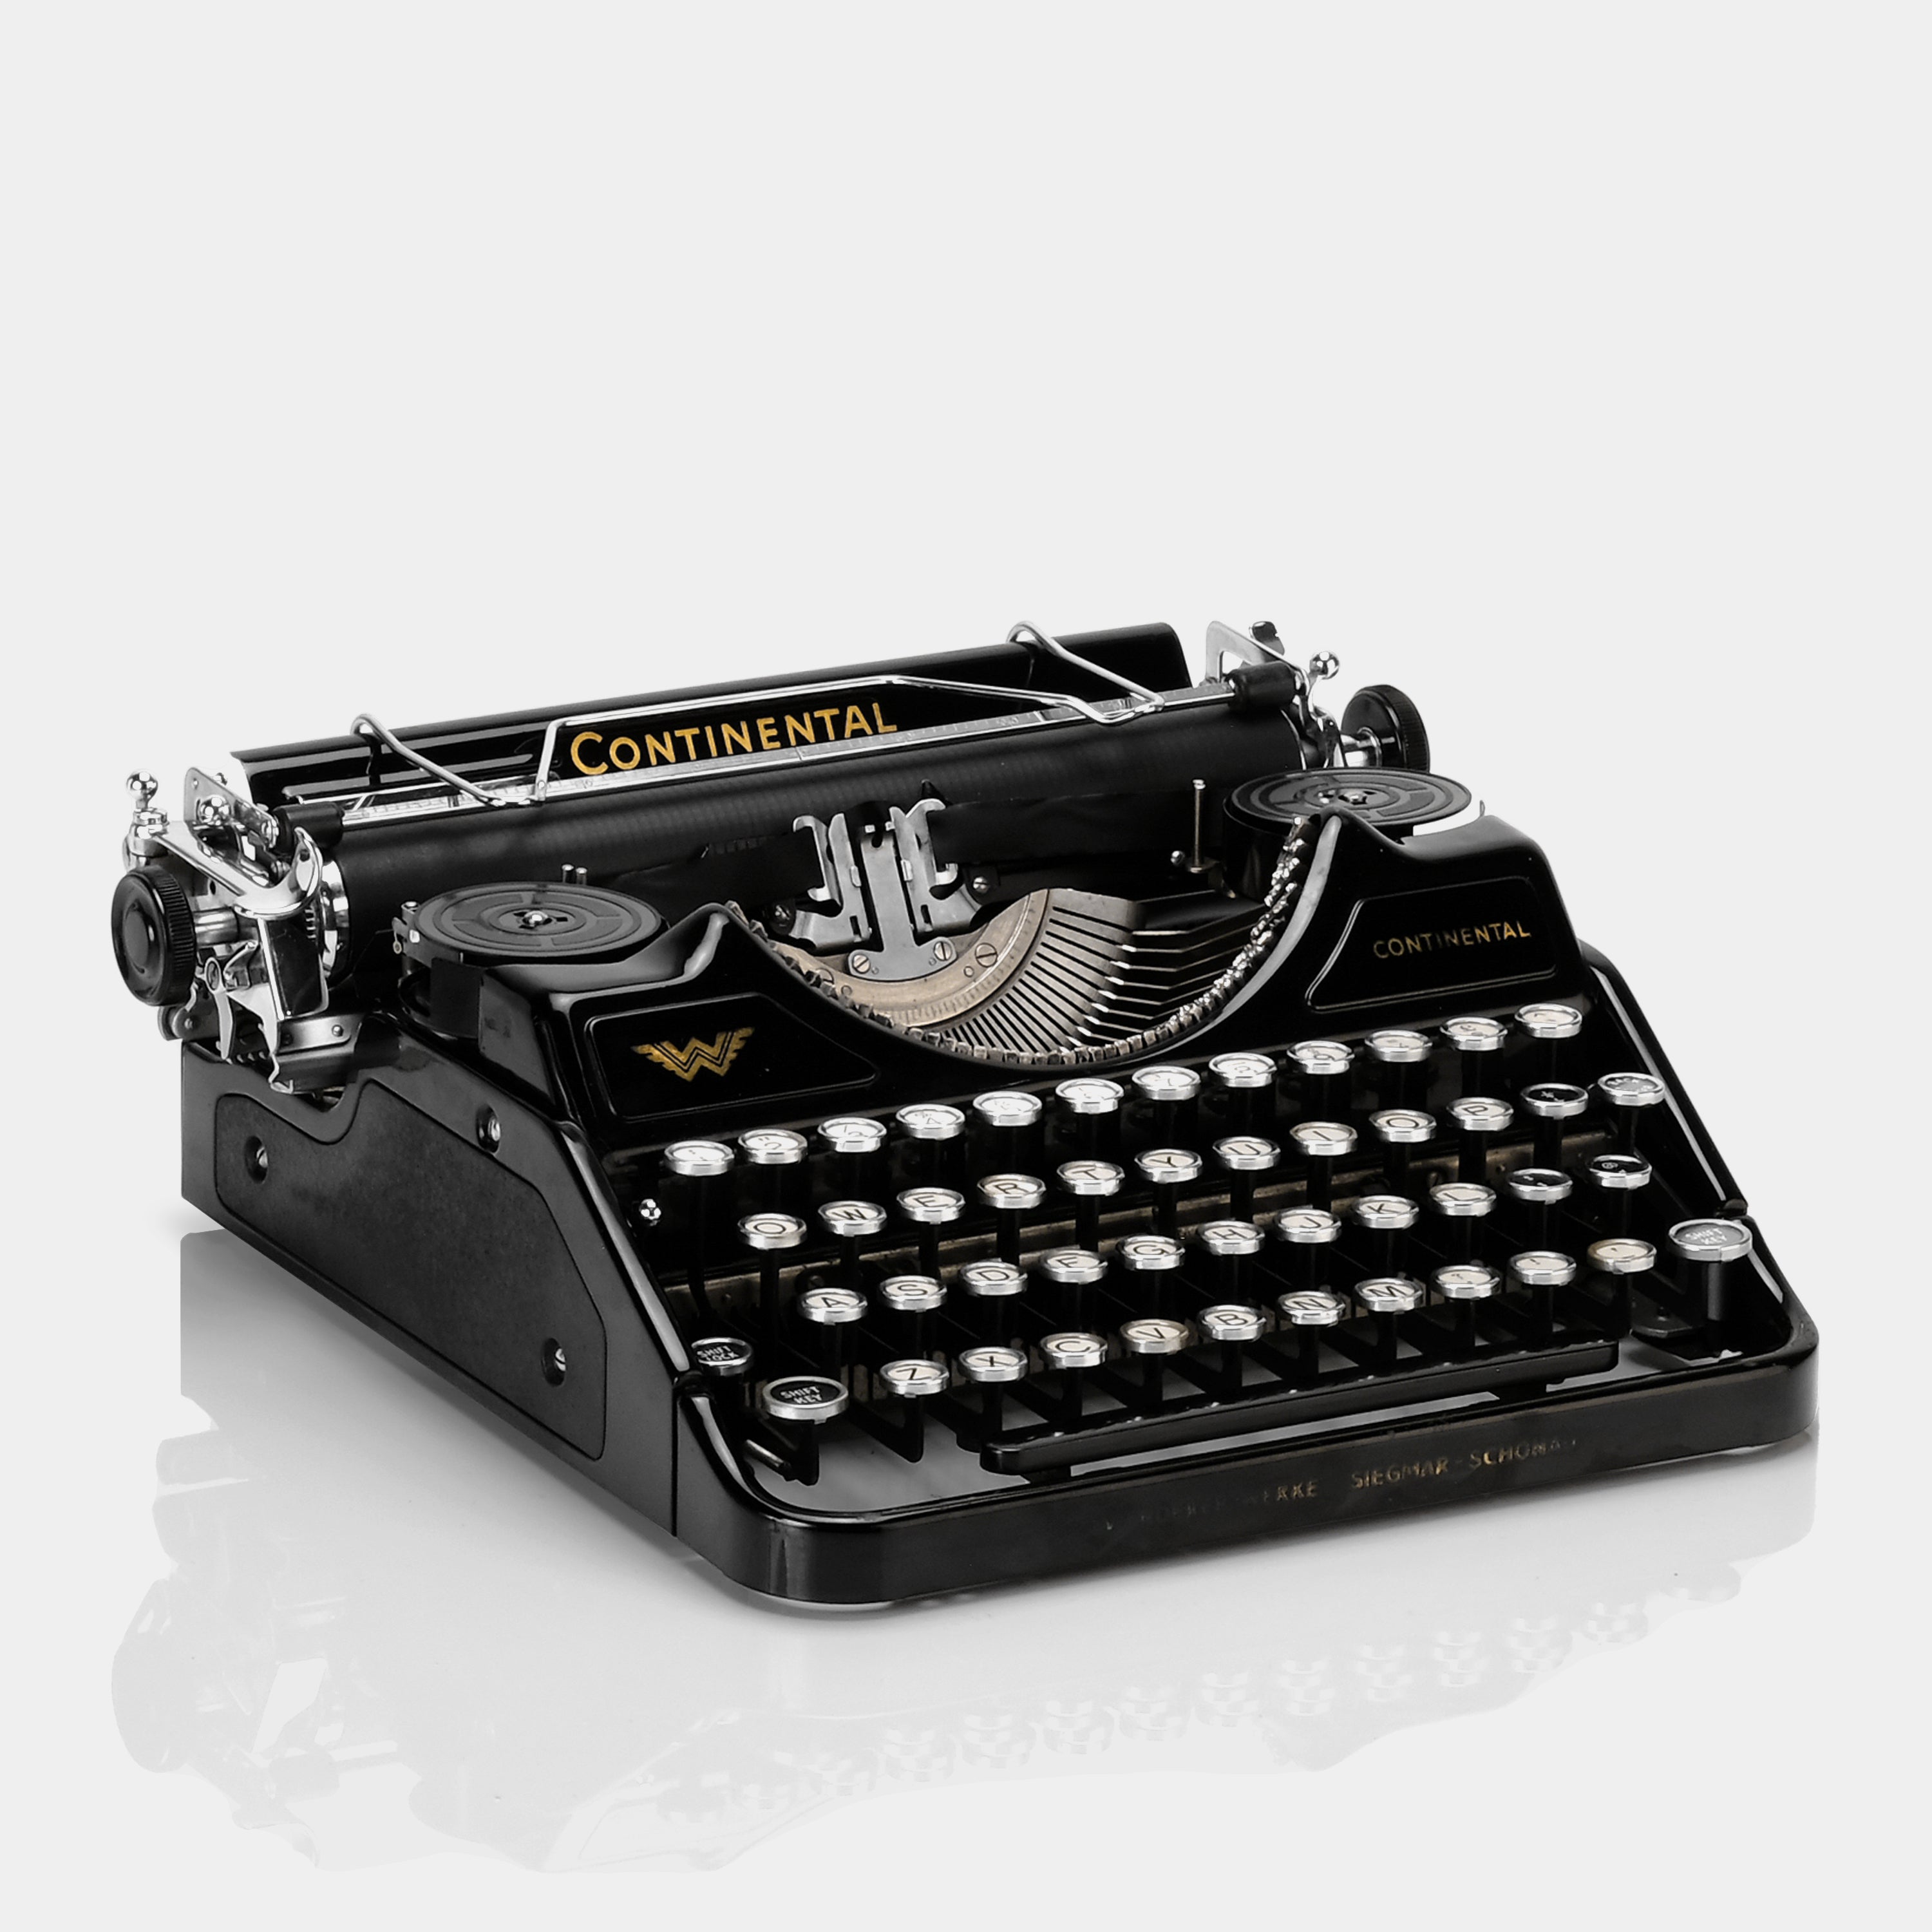 Wanderer-Werke Continental Black Manual Typewriter